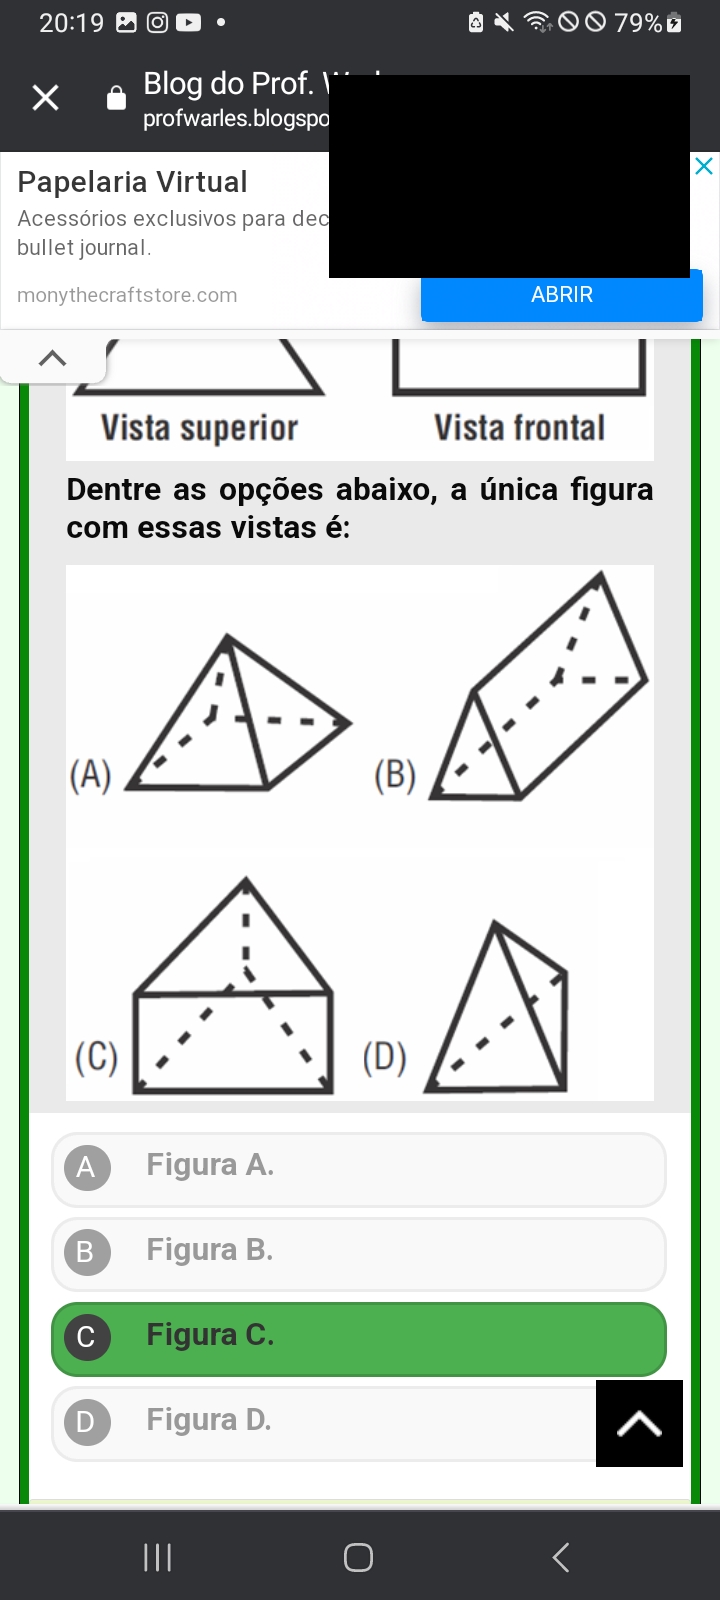 QUIZ DE MATEMÁTICA 9 ANO - Matemática